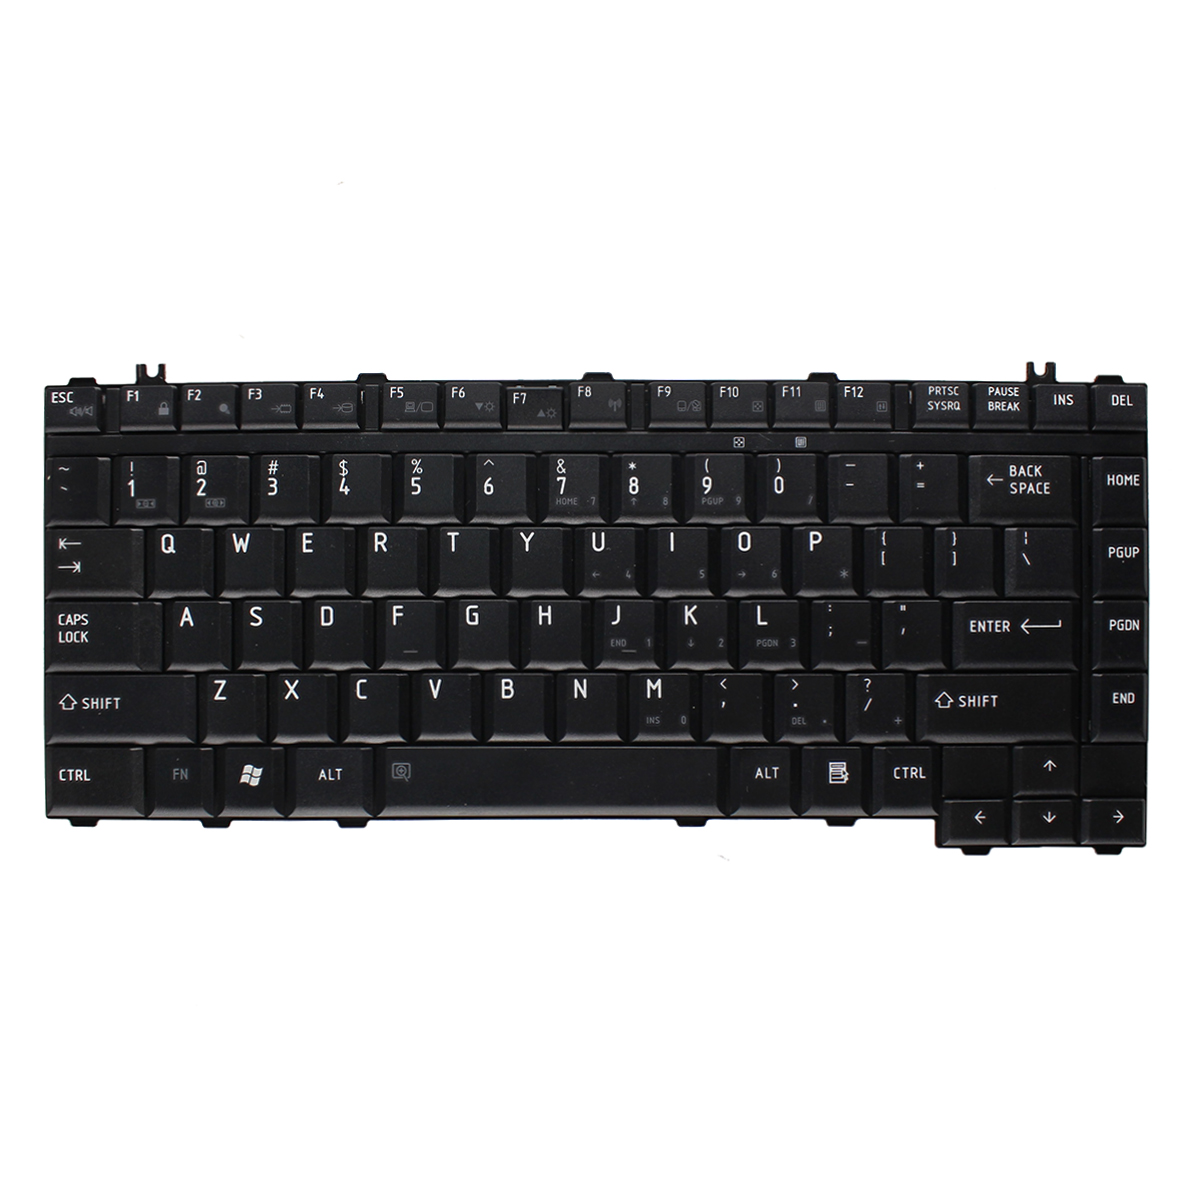 New Keyboard for Toshiba L36 L41 L42 L45 L46 L47 65F Laptop - Click Image to Close